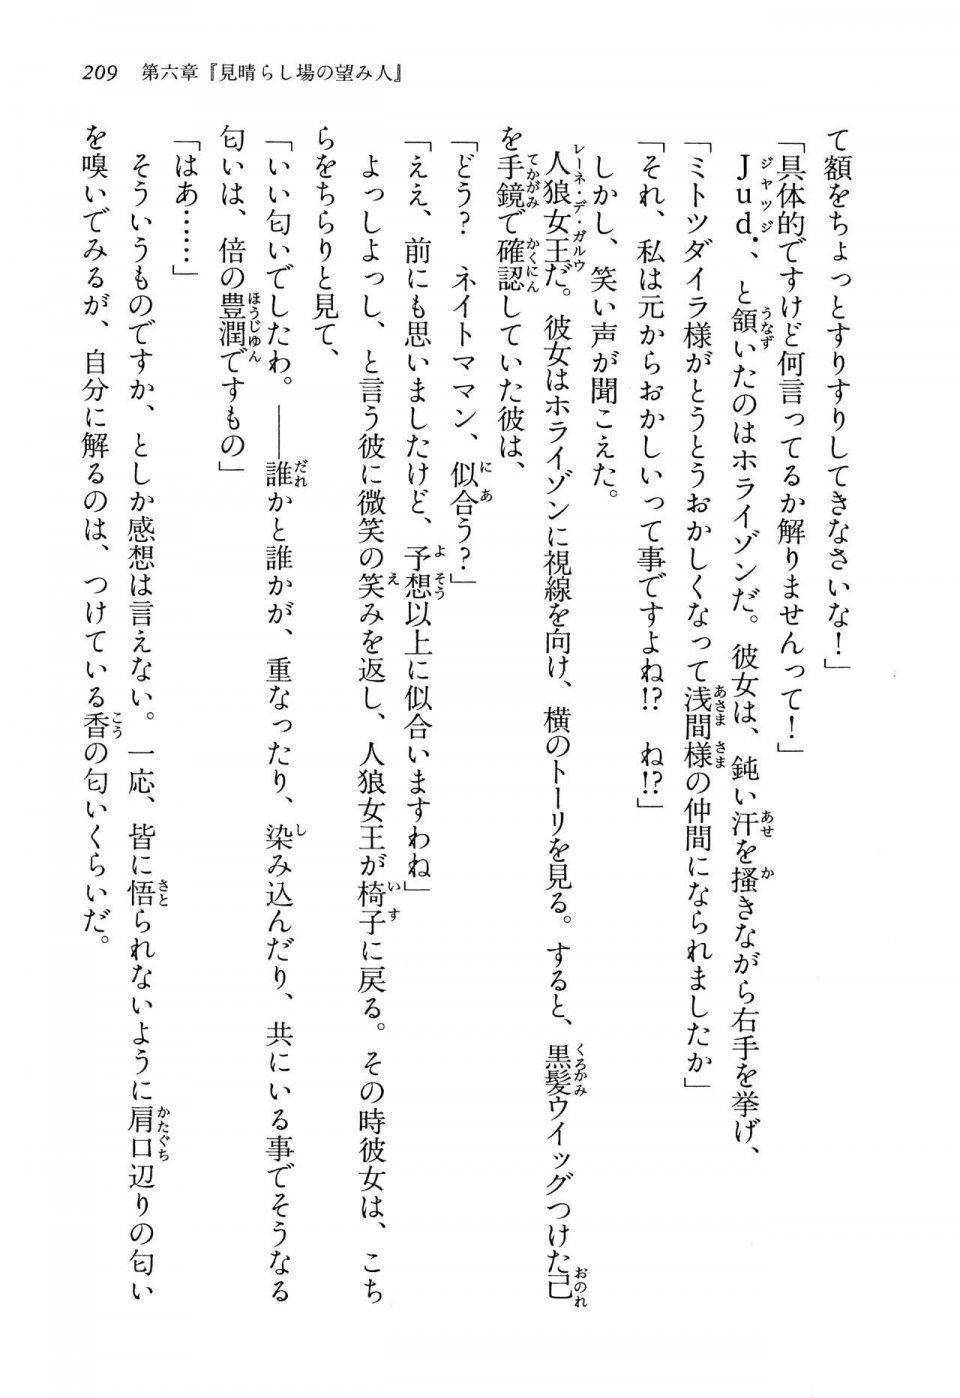 Kyoukai Senjou no Horizon LN Vol 13(6A) - Photo #209